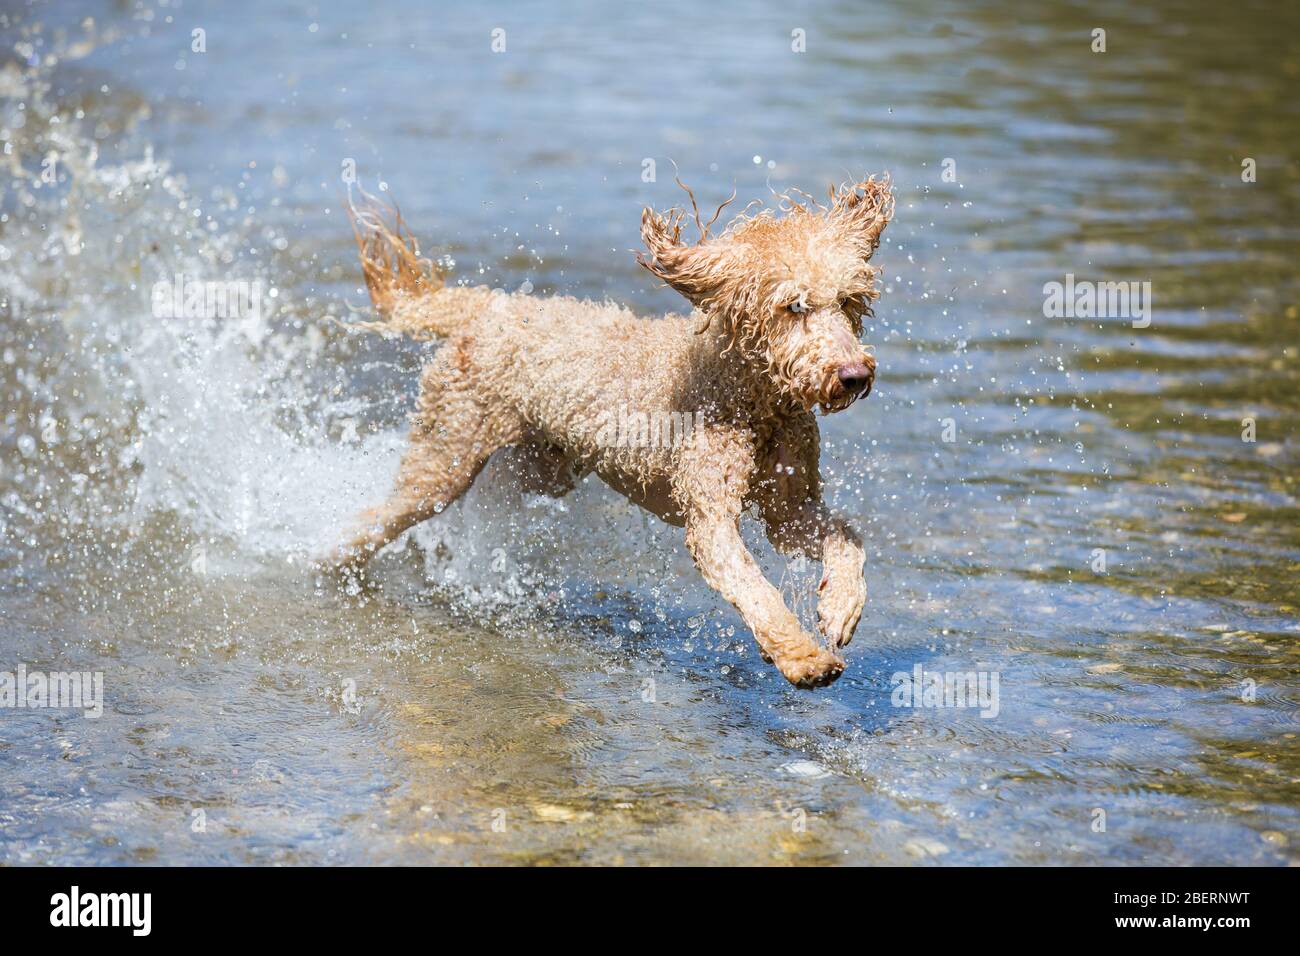 Porträt eines jungen Pudelhundes. Kraftvoller Hund, der im Wasser eines kalten Flusses mit Spritzern läuft und an einem sonnigen Tag, Leitha, Österreich, Spaß hat Stockfoto